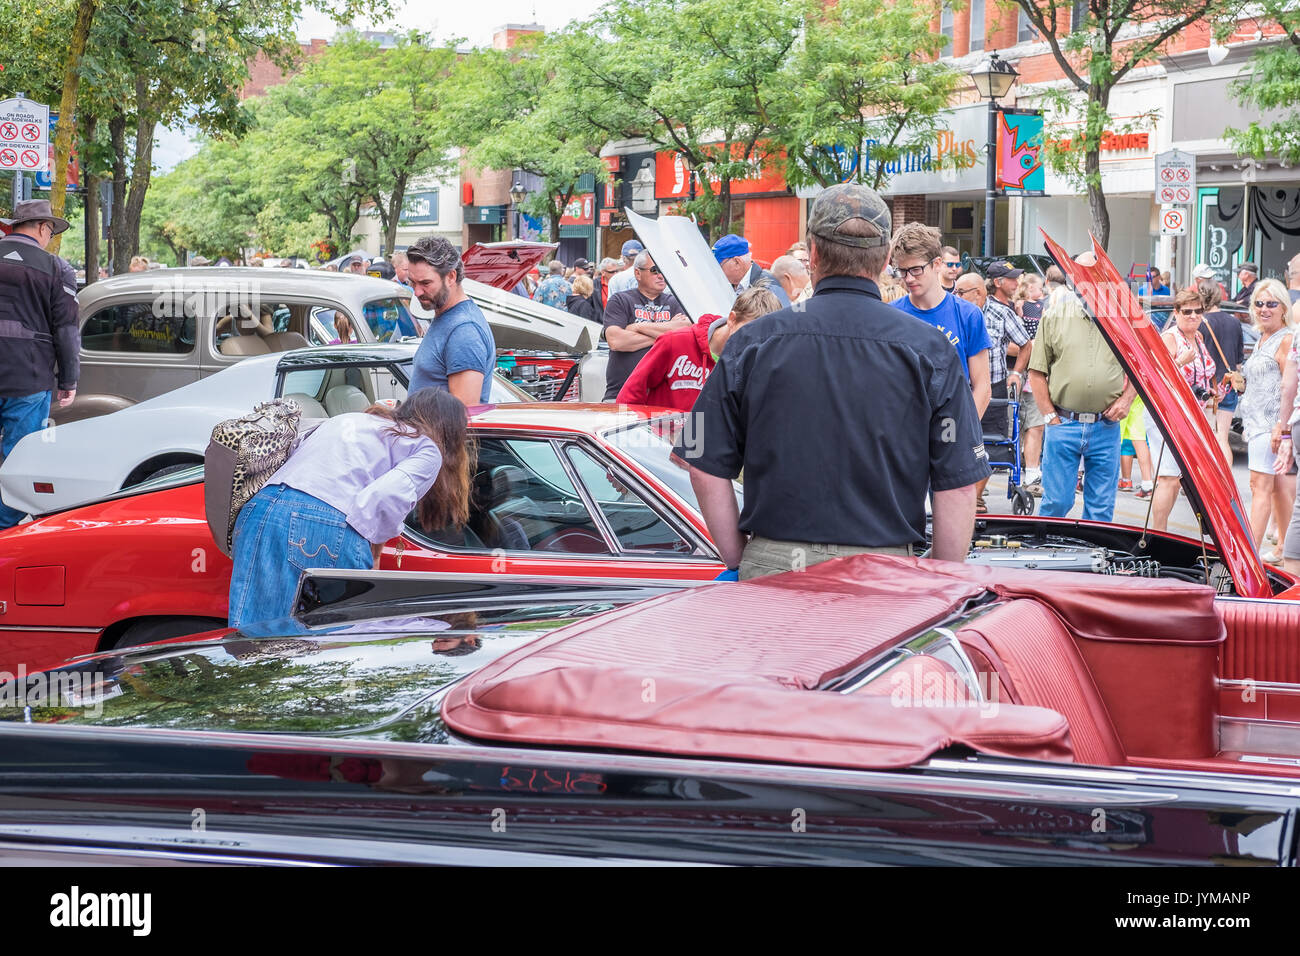 ORILLIA ONTARIO KANADA - 17. August 2017: 19. jährlichen Downtown Orillia Classic Car Show. Eine erstaunliche Sammlung von über 400 klassische Autos und Nutzfahrzeuge o Stockfoto